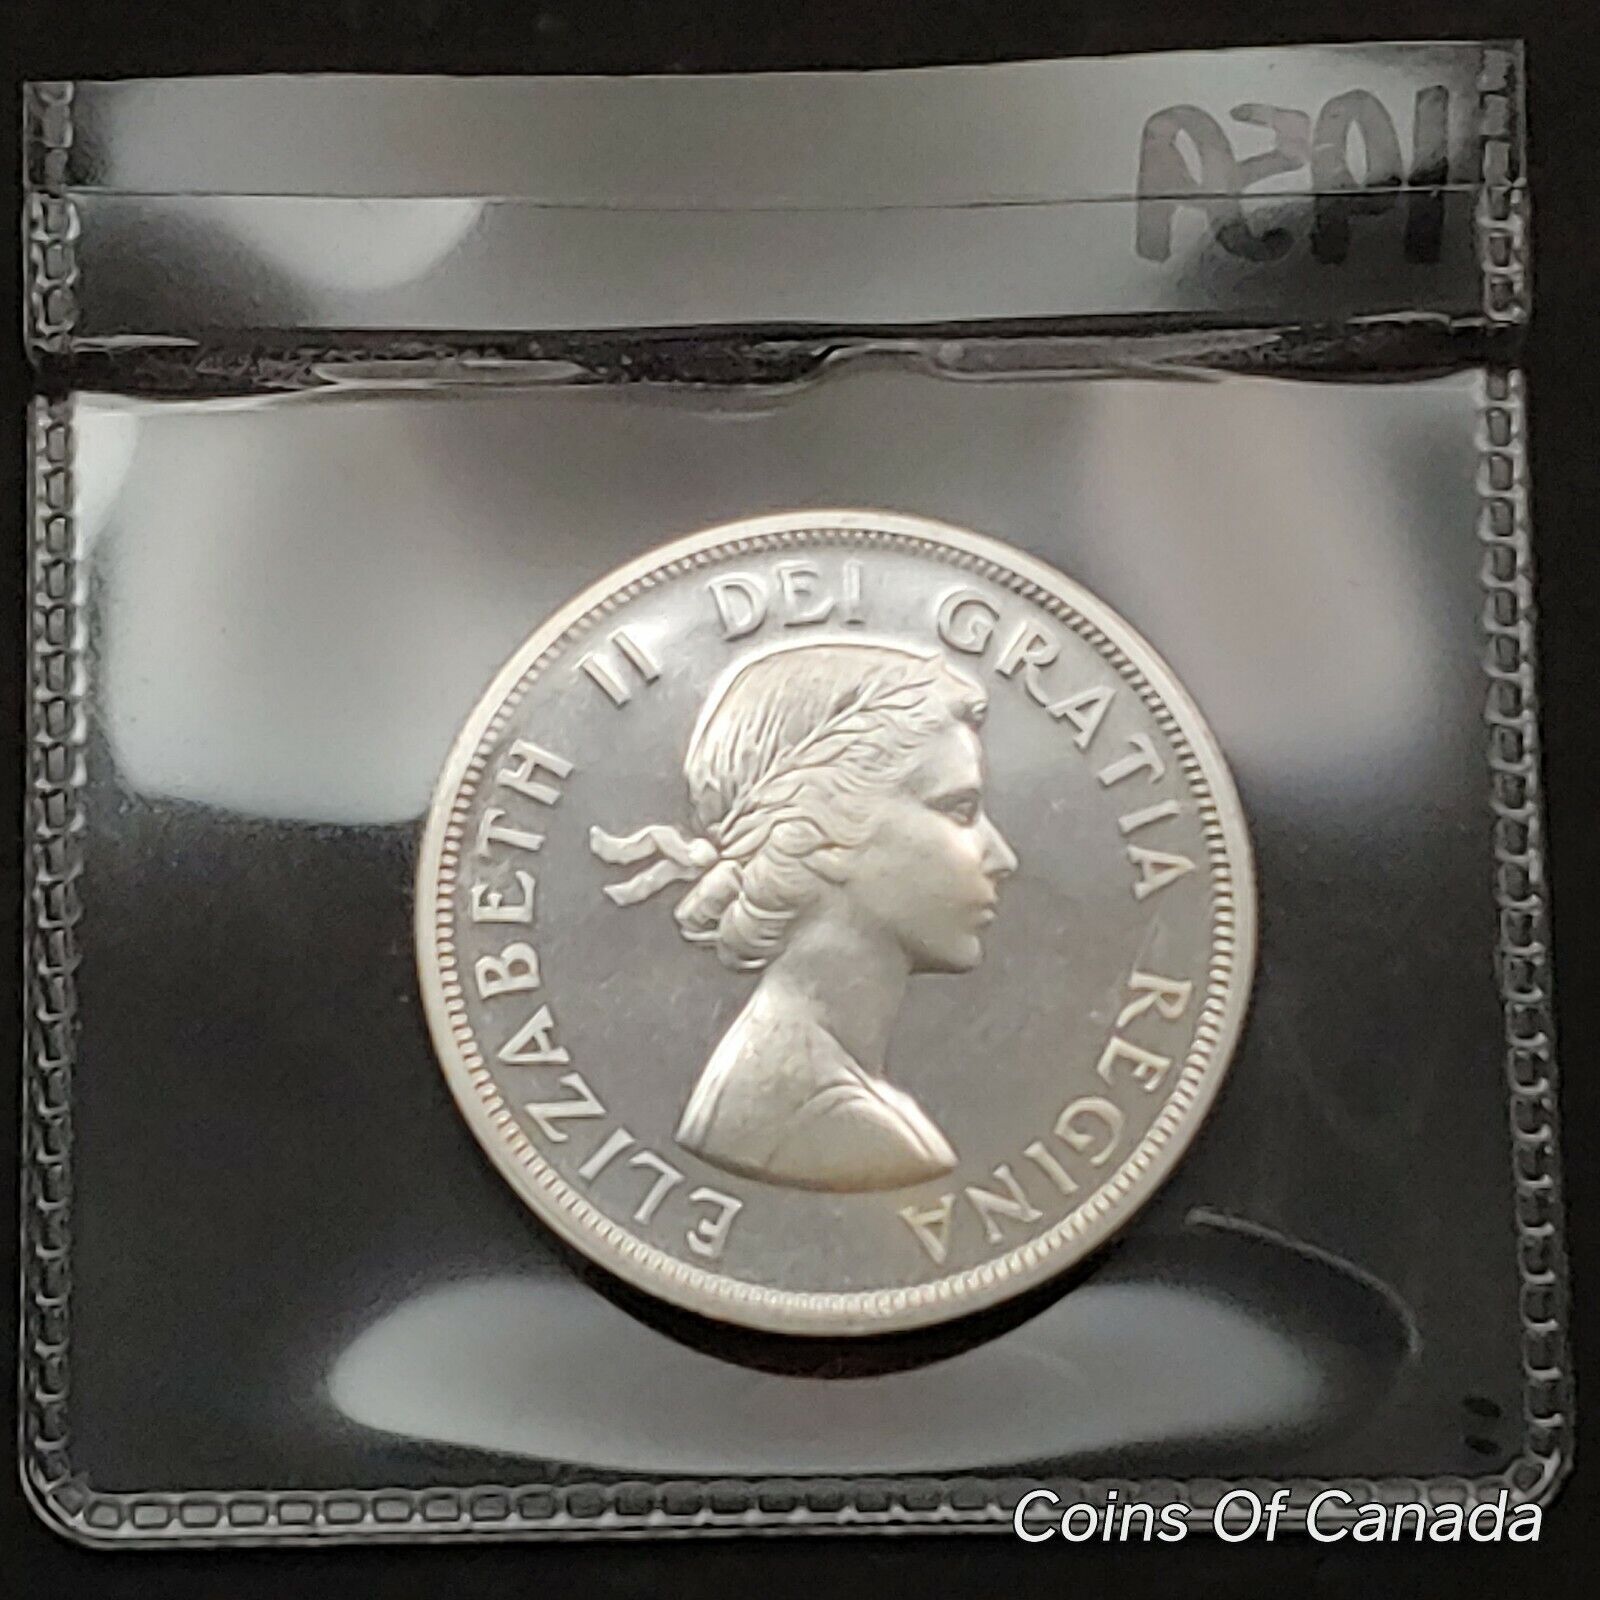 1959 Canada $1 Silver Dollar UNCIRCULATED Coin - STUNNING Coin! #coinsofcanada